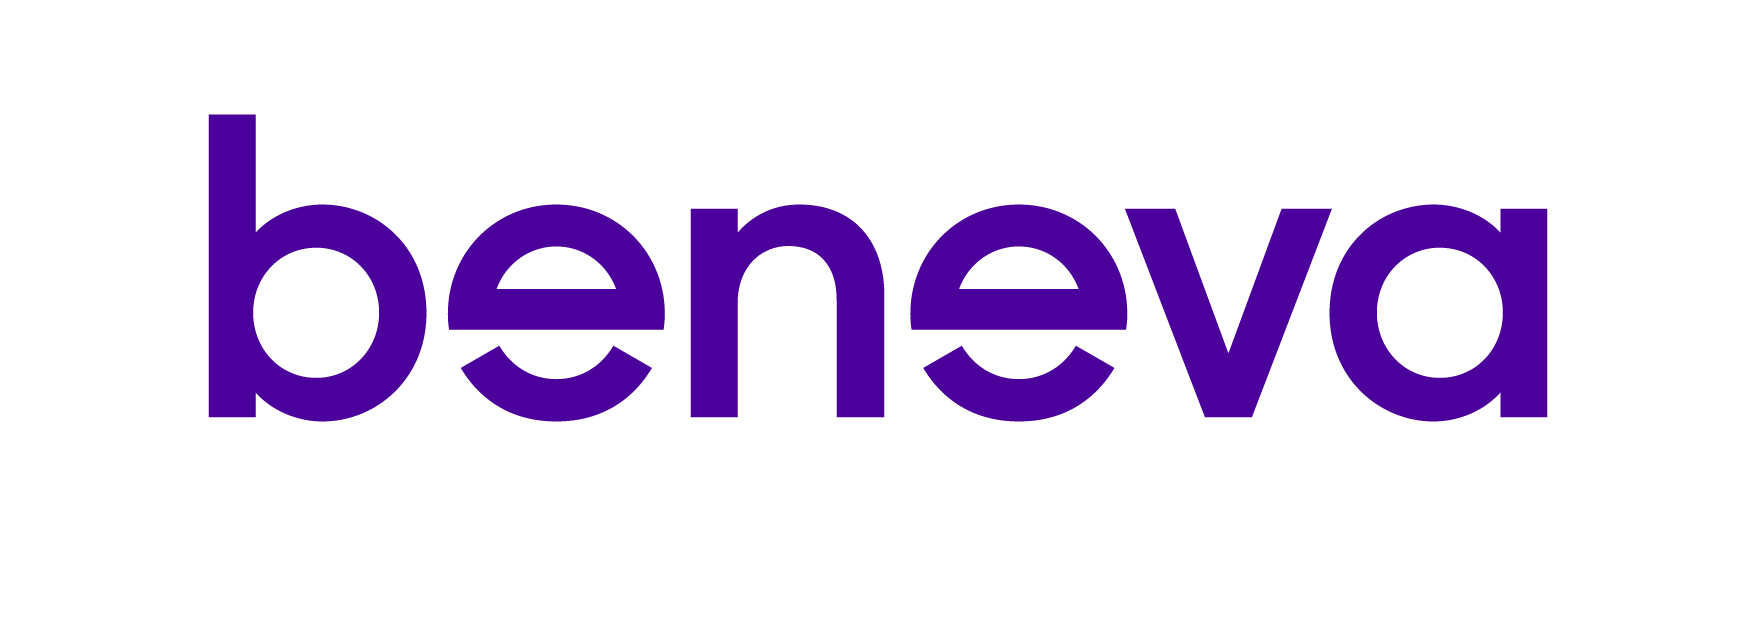 logos communauto - Beneva